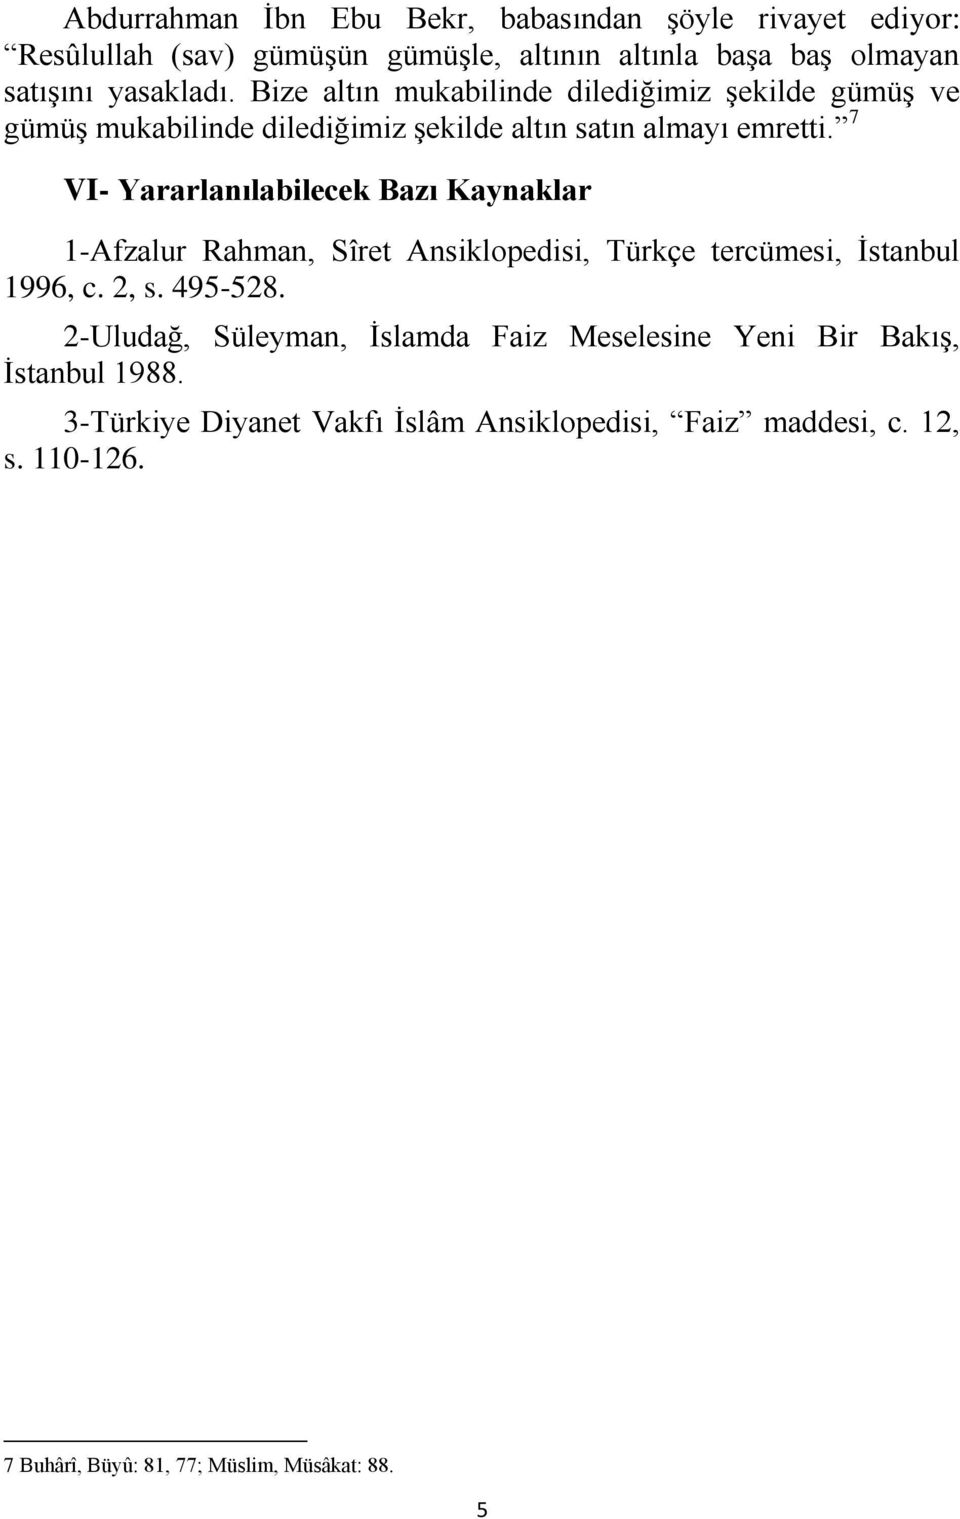 7 VI- Yararlanılabilecek Bazı Kaynaklar 1-Afzalur Rahman, Sîret Ansiklopedisi, Türkçe tercümesi, İstanbul 1996, c. 2, s. 495-528.